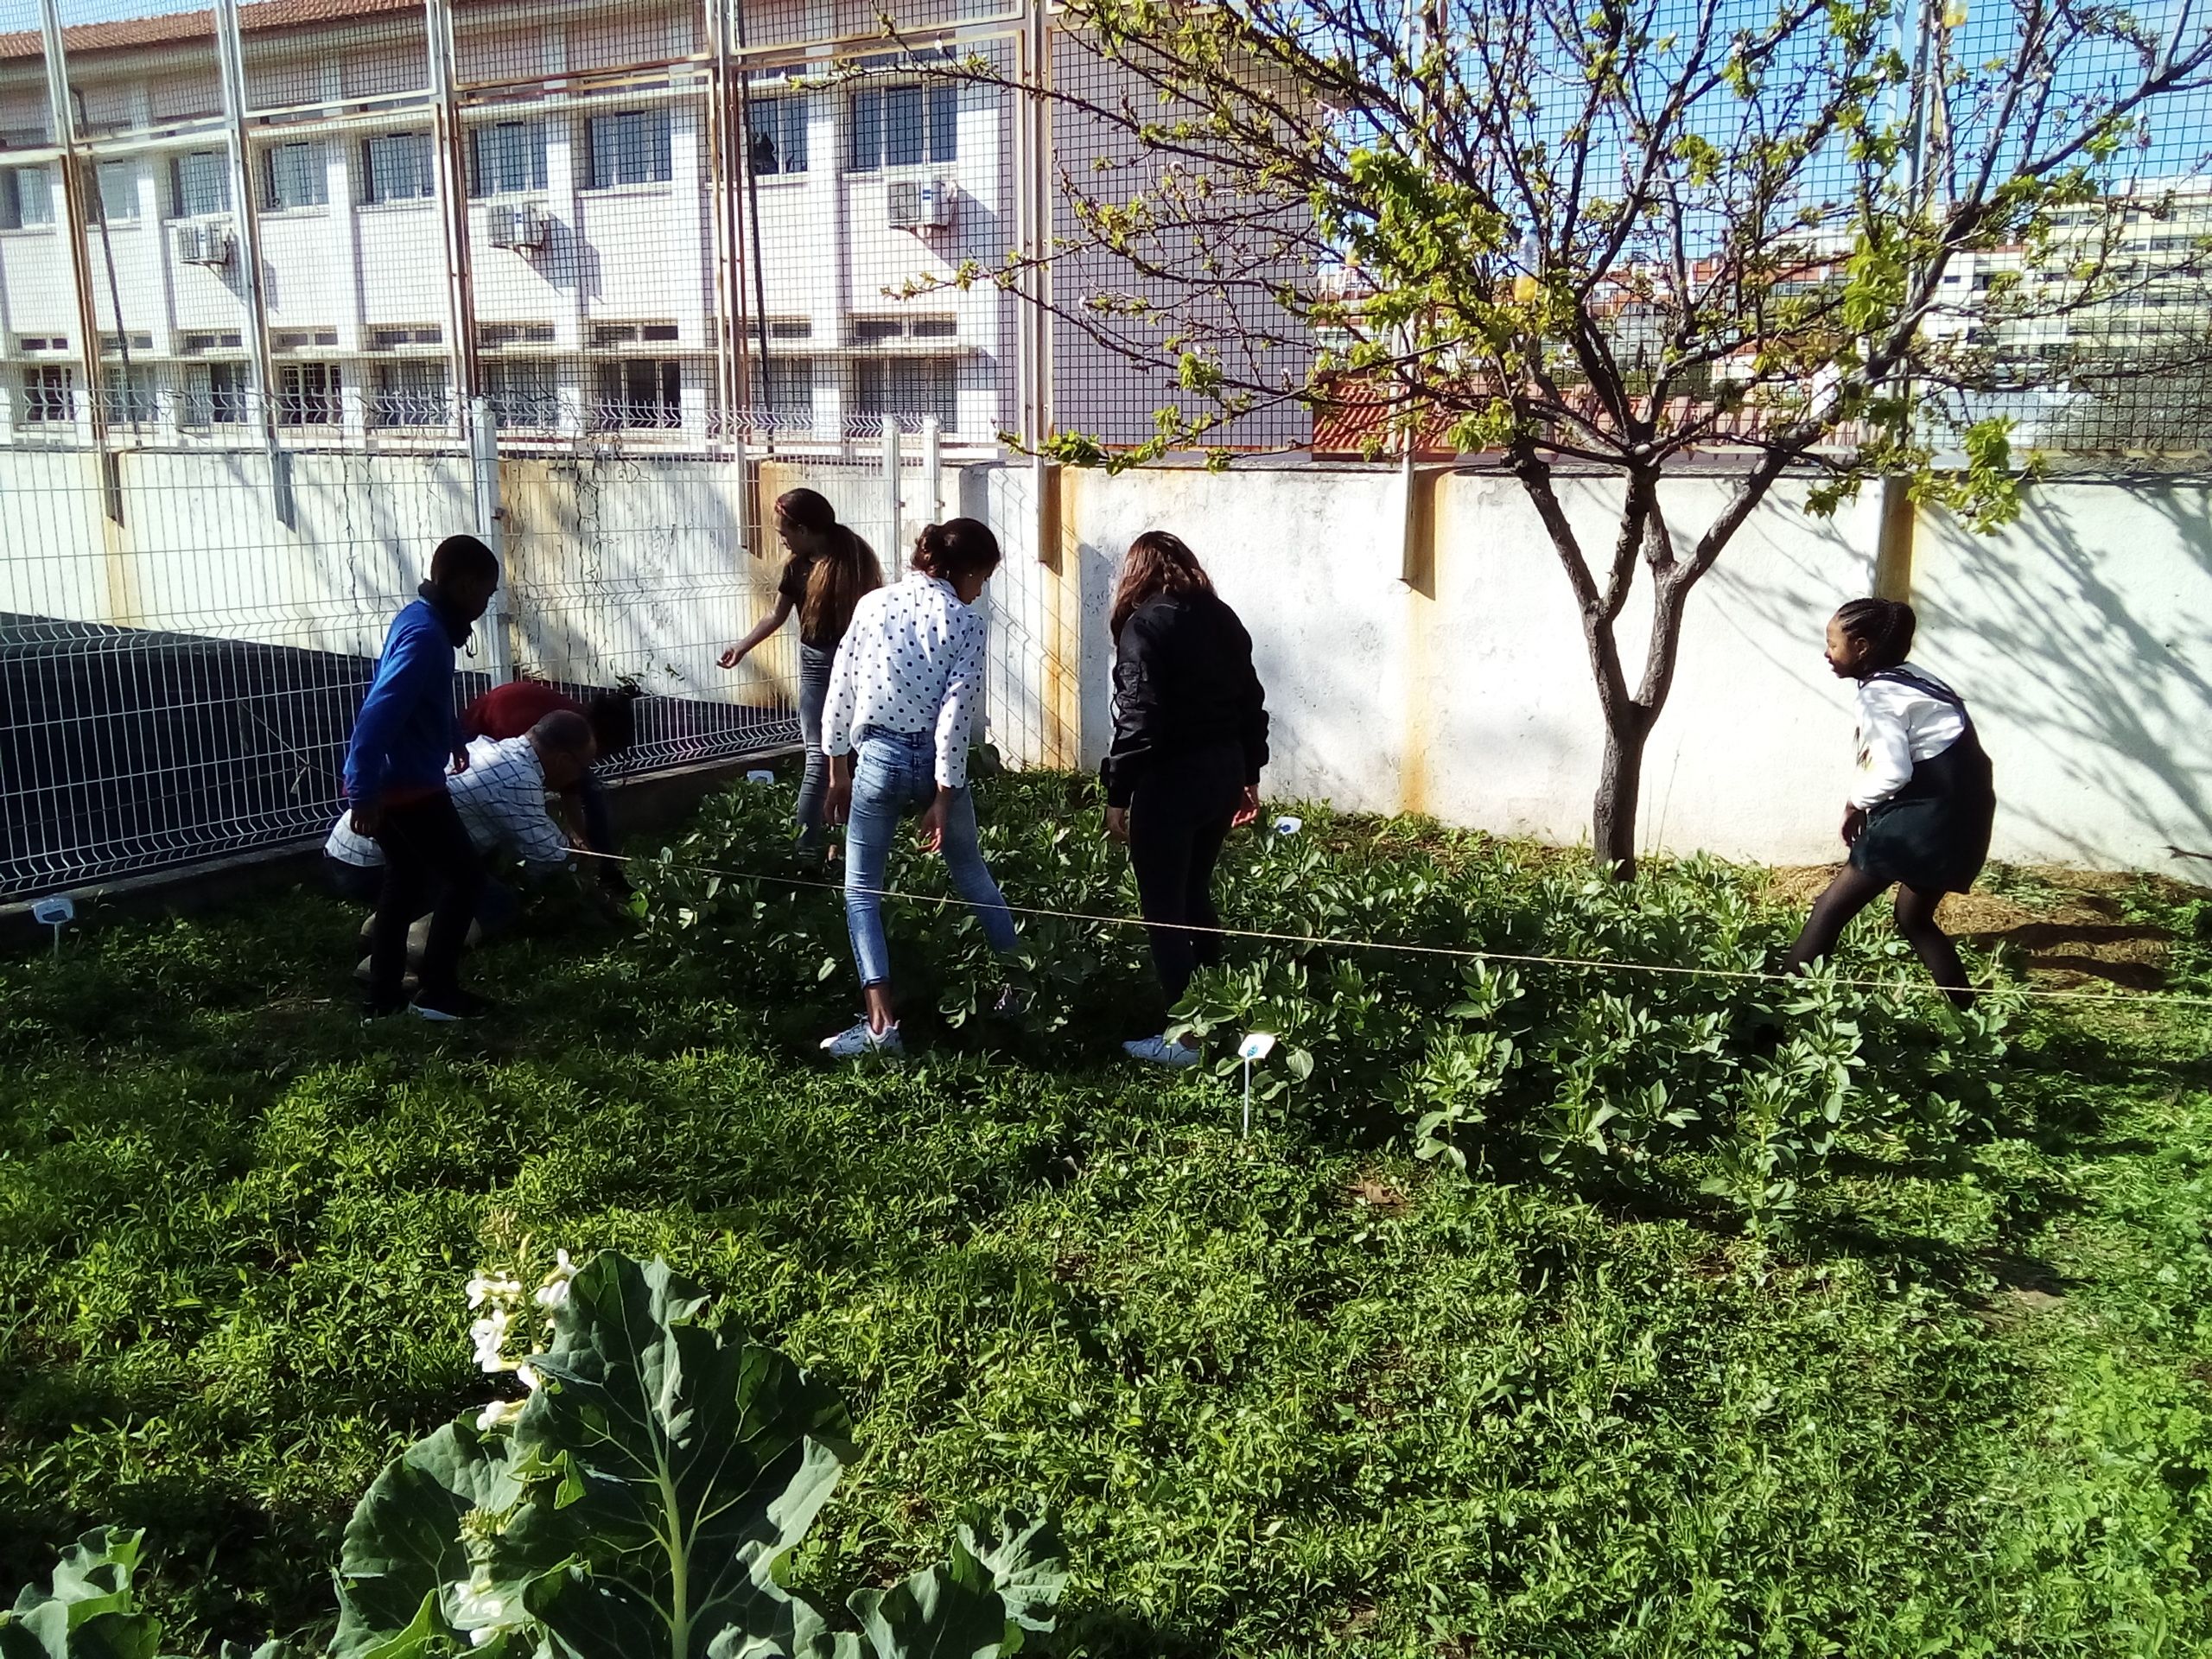 Manutenção e rega
Os alunos fazem a manutenção e rega da horta